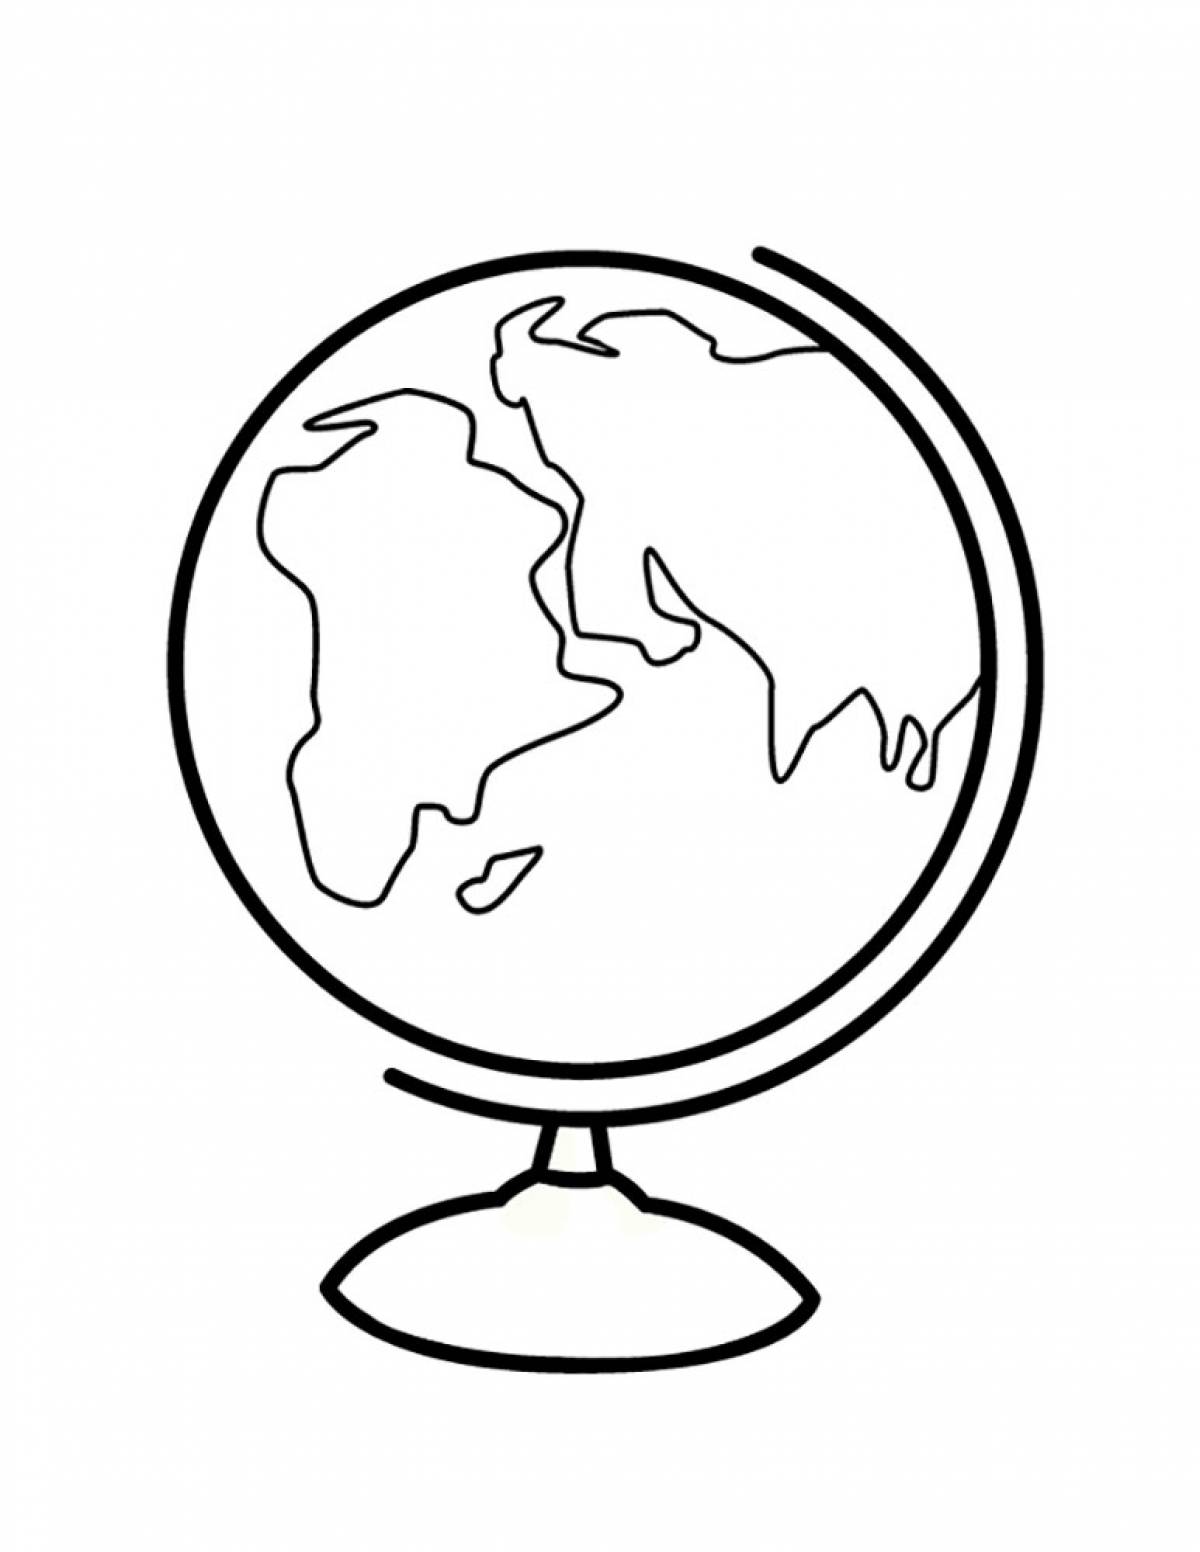 Children's globe